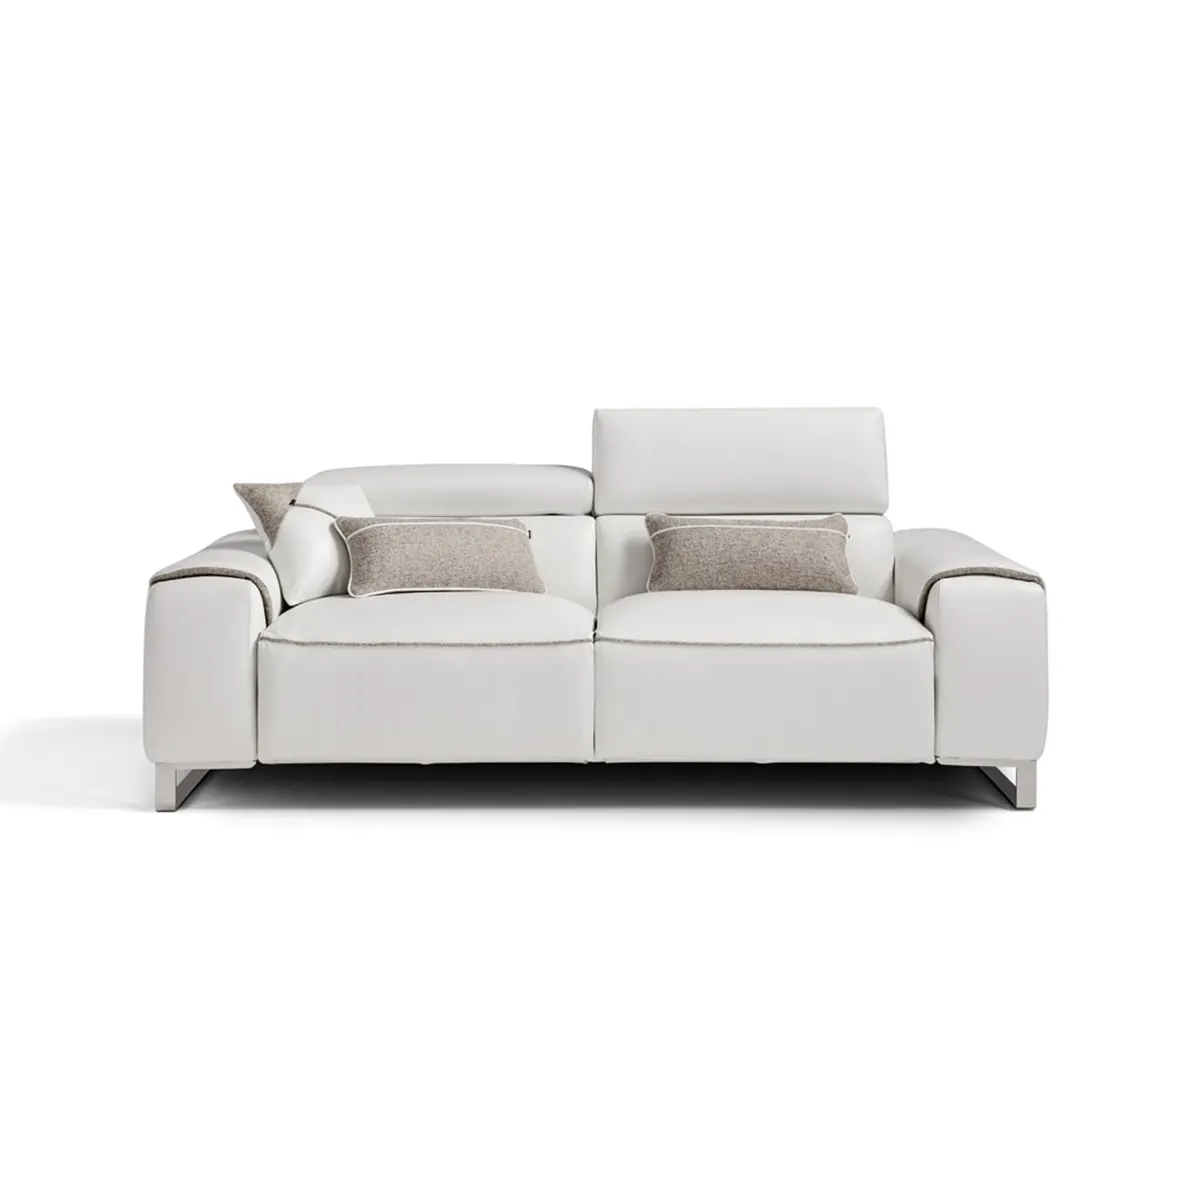 Sofá cama de cuero hecho en Italia de alta calidad, colchón cómodo convertible plegable, sofá moderno